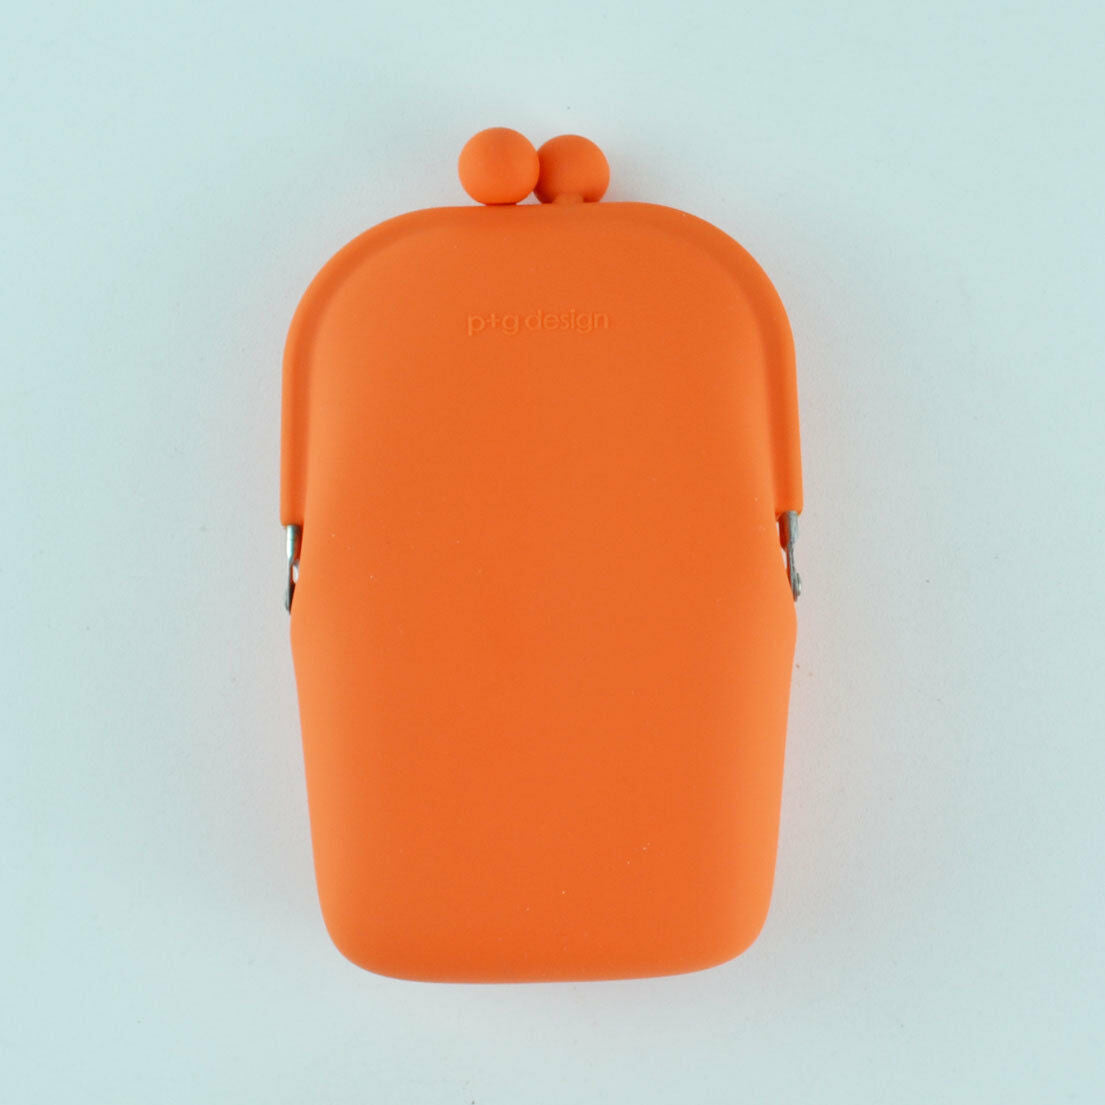 Silicone Purse - Wallet - Cell Phone Holder - POCH II P+G Designs - Orange